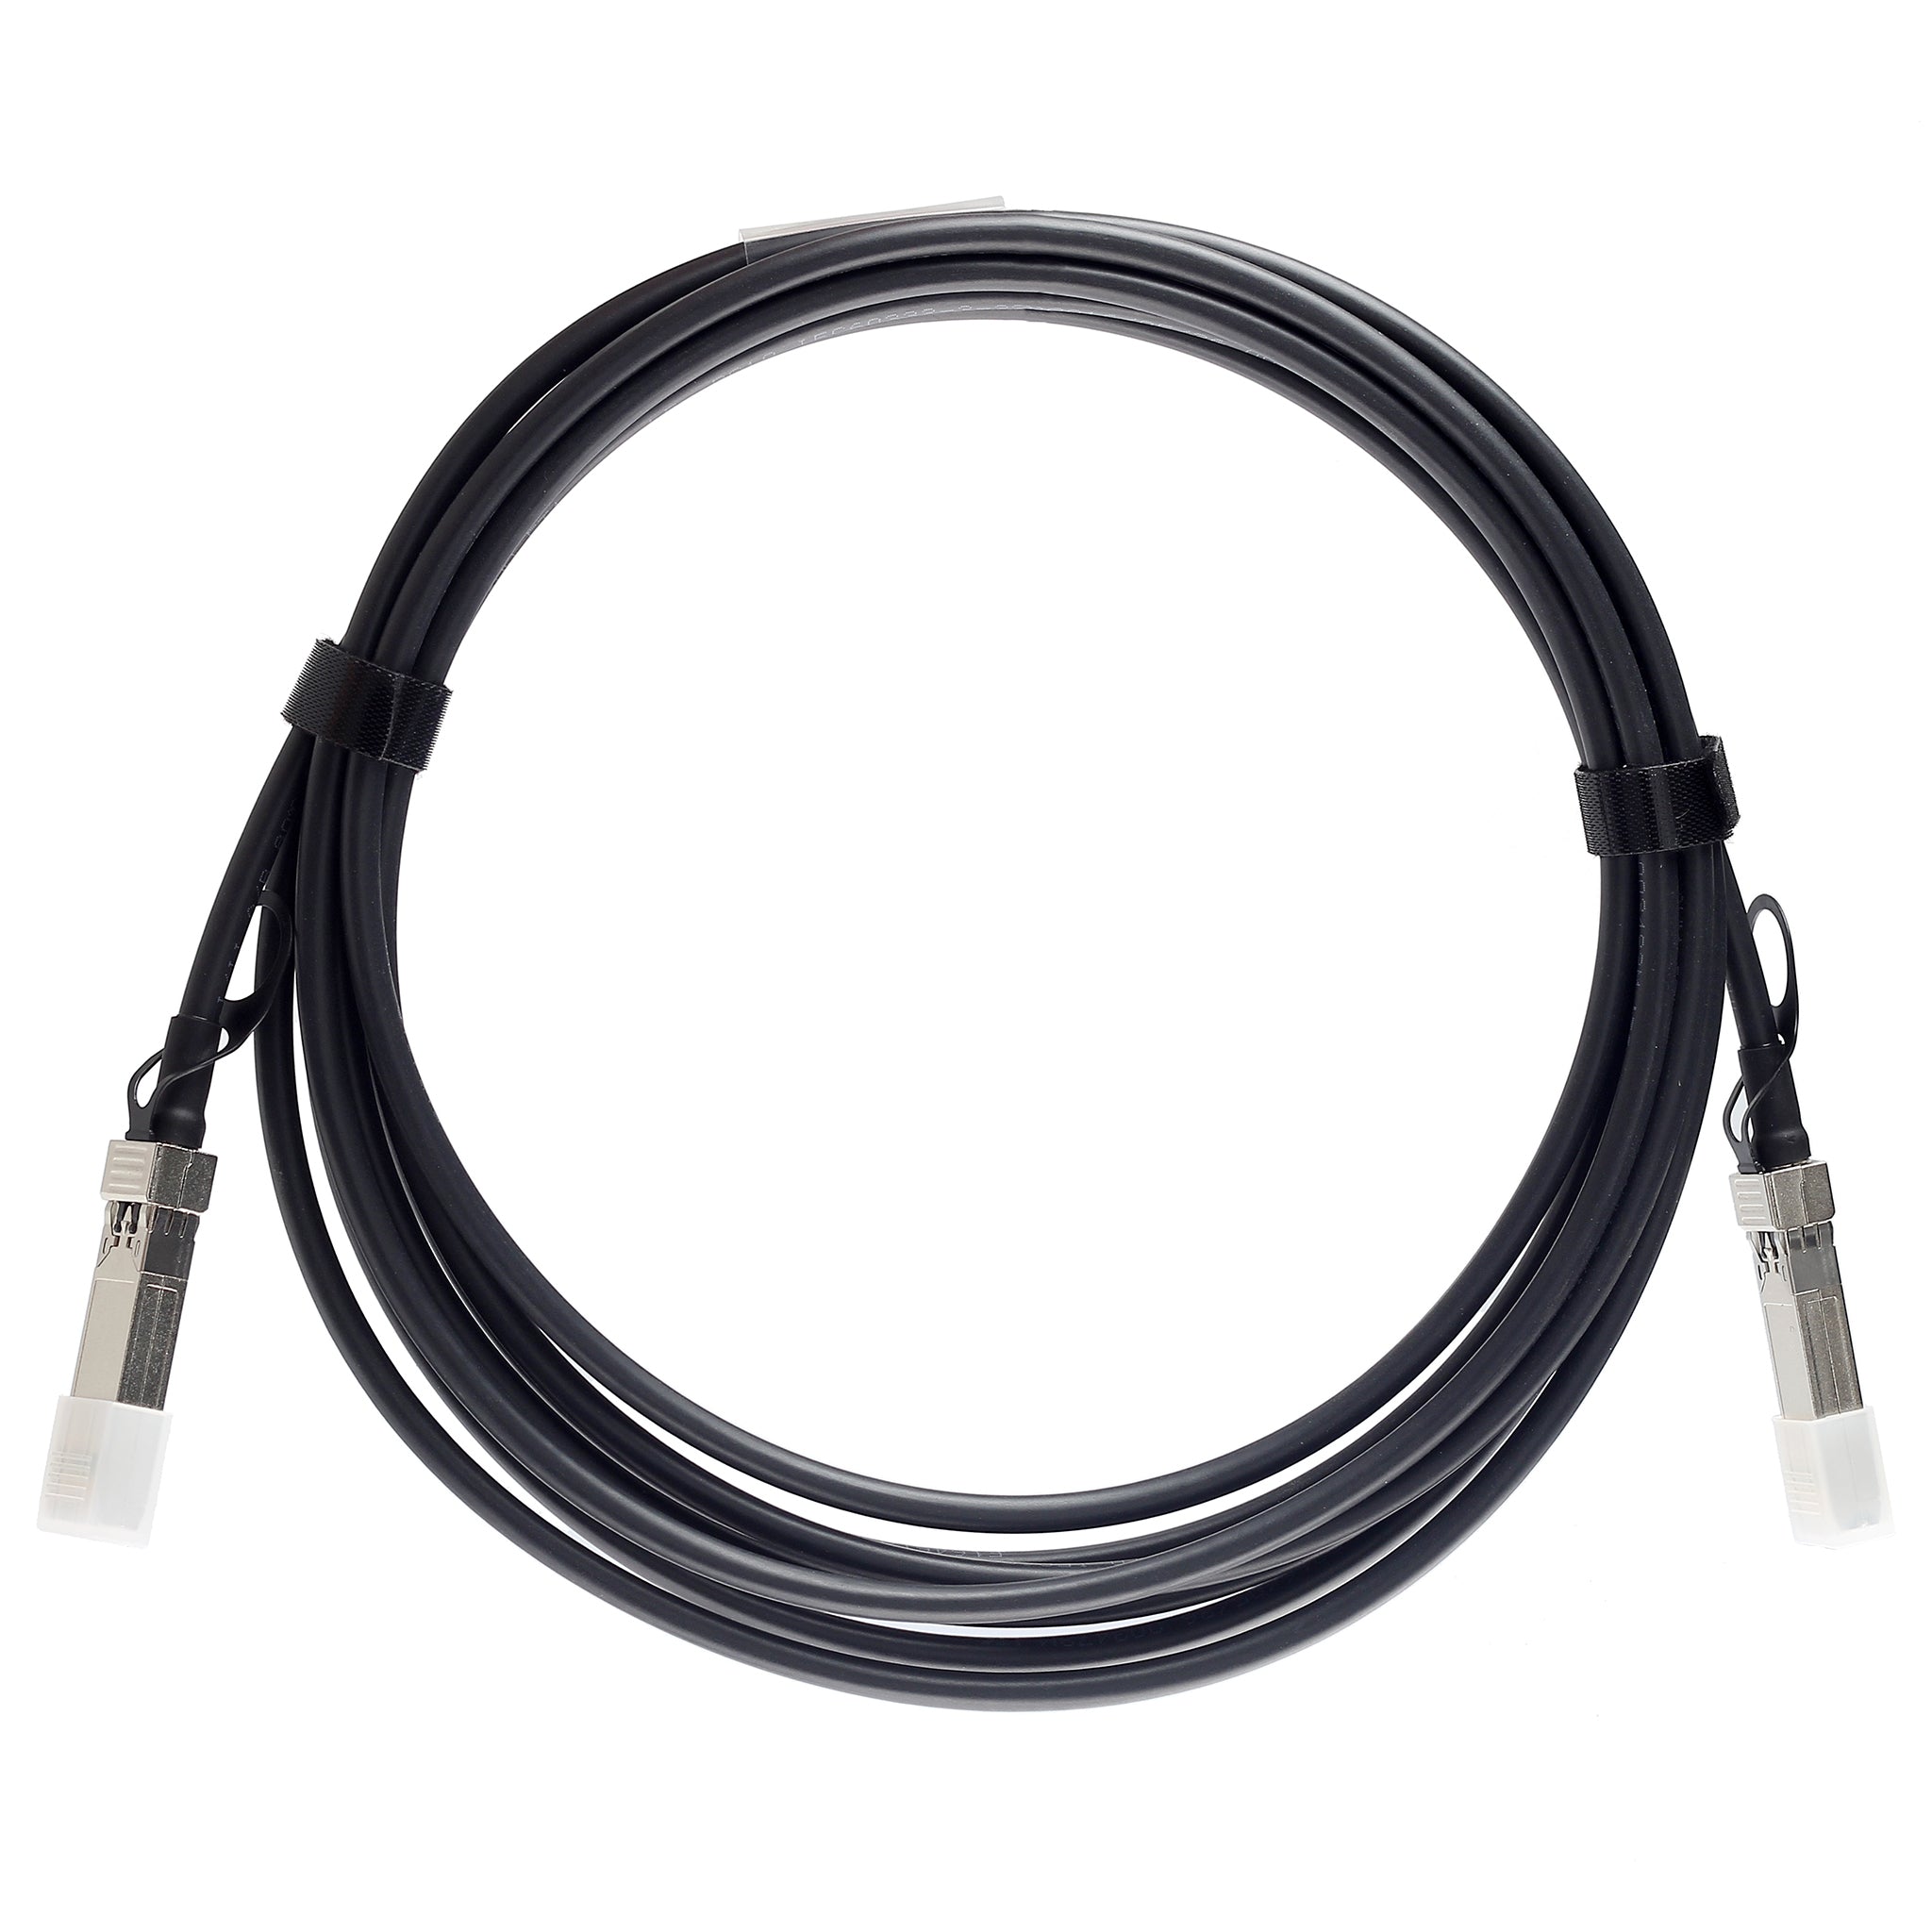 QSFP-100G-C3M-C - 3m Alcatel-Lucent (Nokia) Compatible 100G QSFP28 Passive Direct Attach Copper Twinax Cable